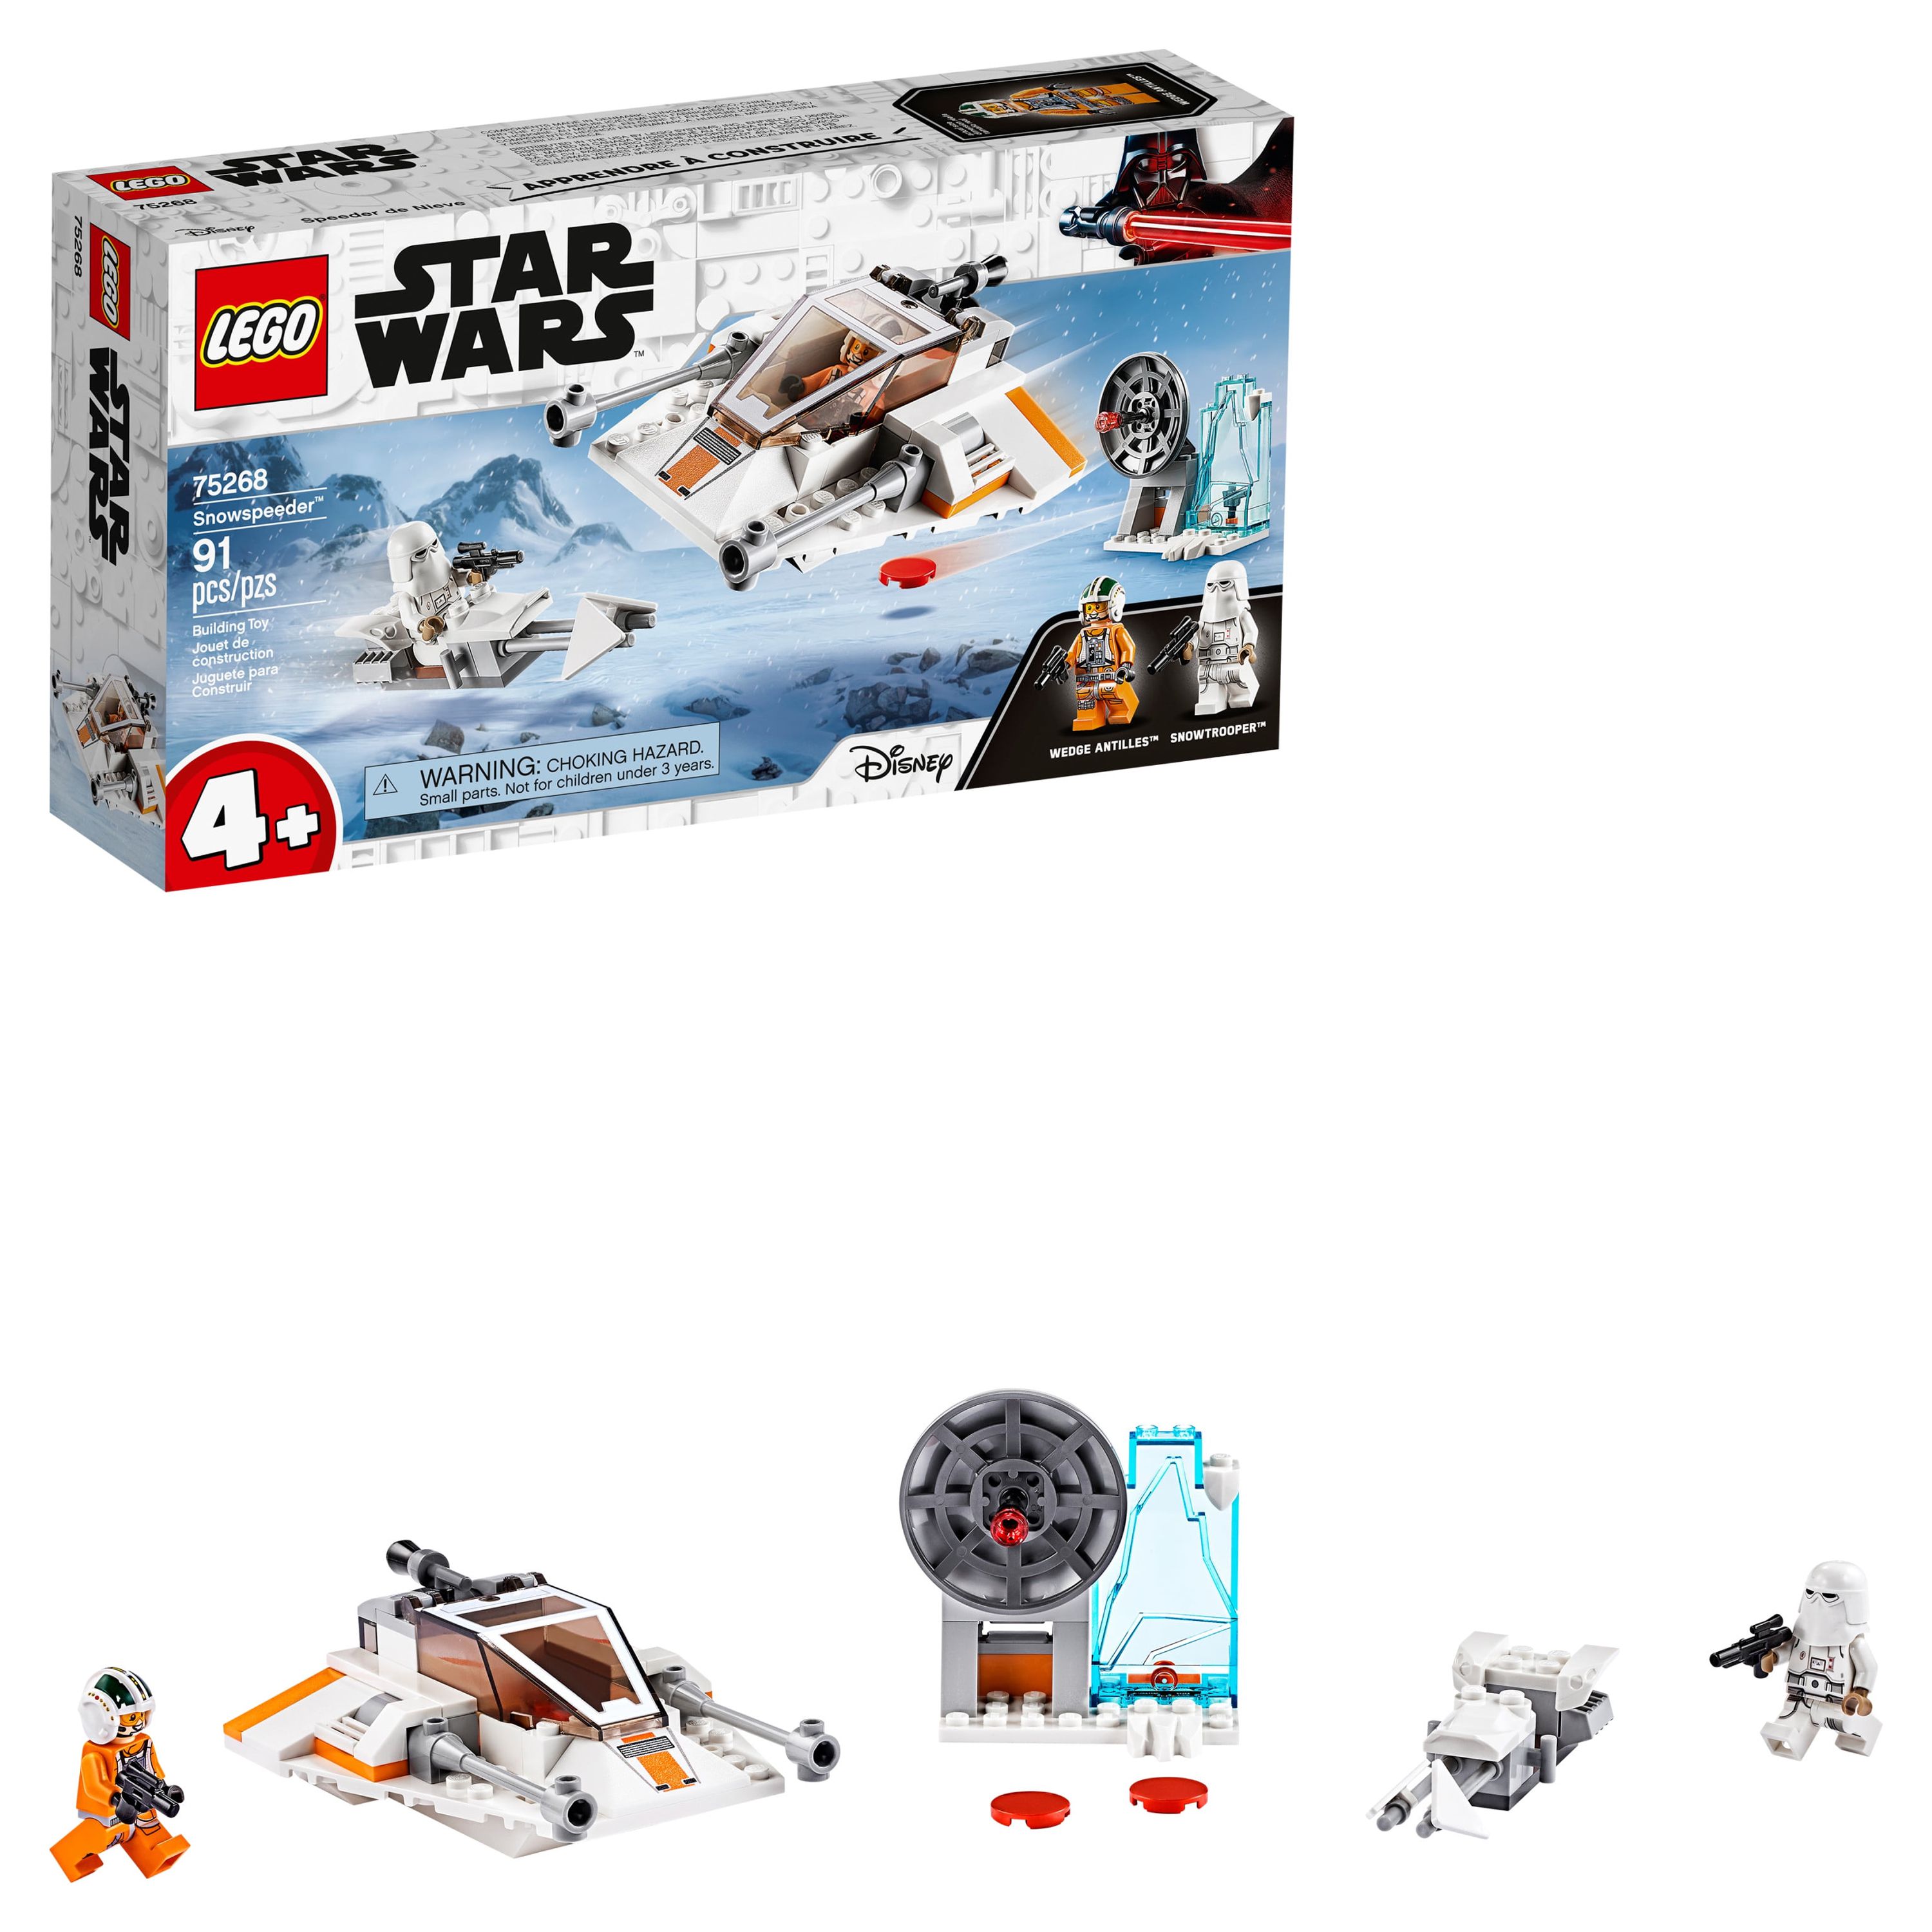 LEGO Star Wars Snowspeeder 75268 Starship Creative Building Toy for Preschool Children 4+ (91 pieces) - image 1 of 7